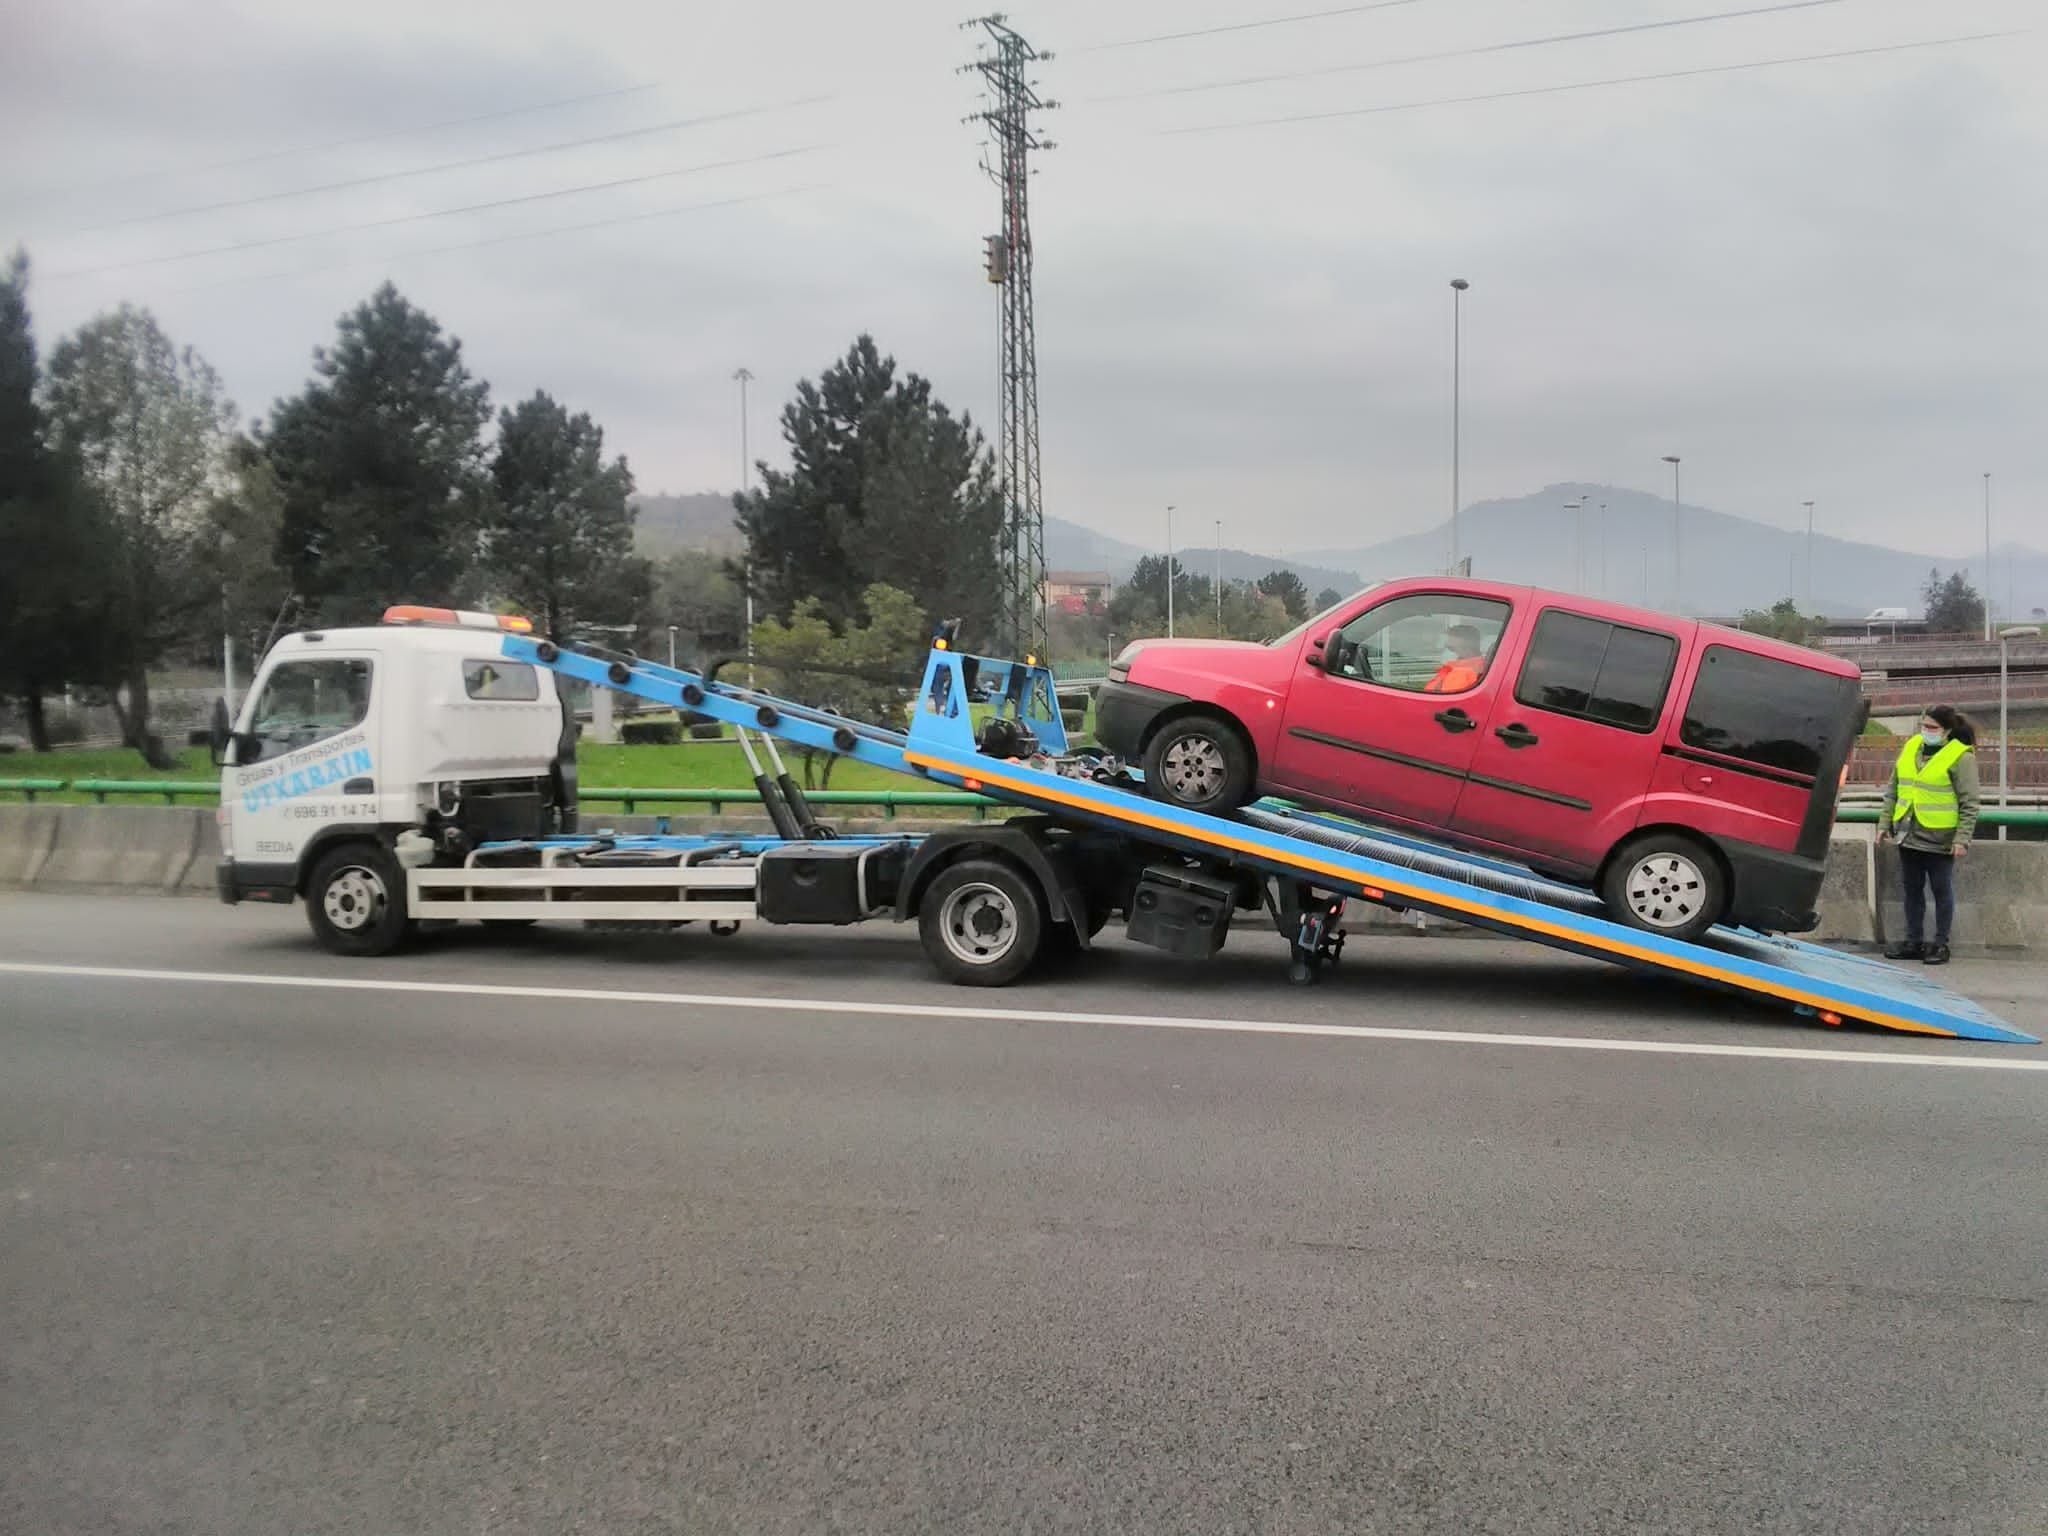 Grúa retirando un vehículo averiado
(Europa Press)